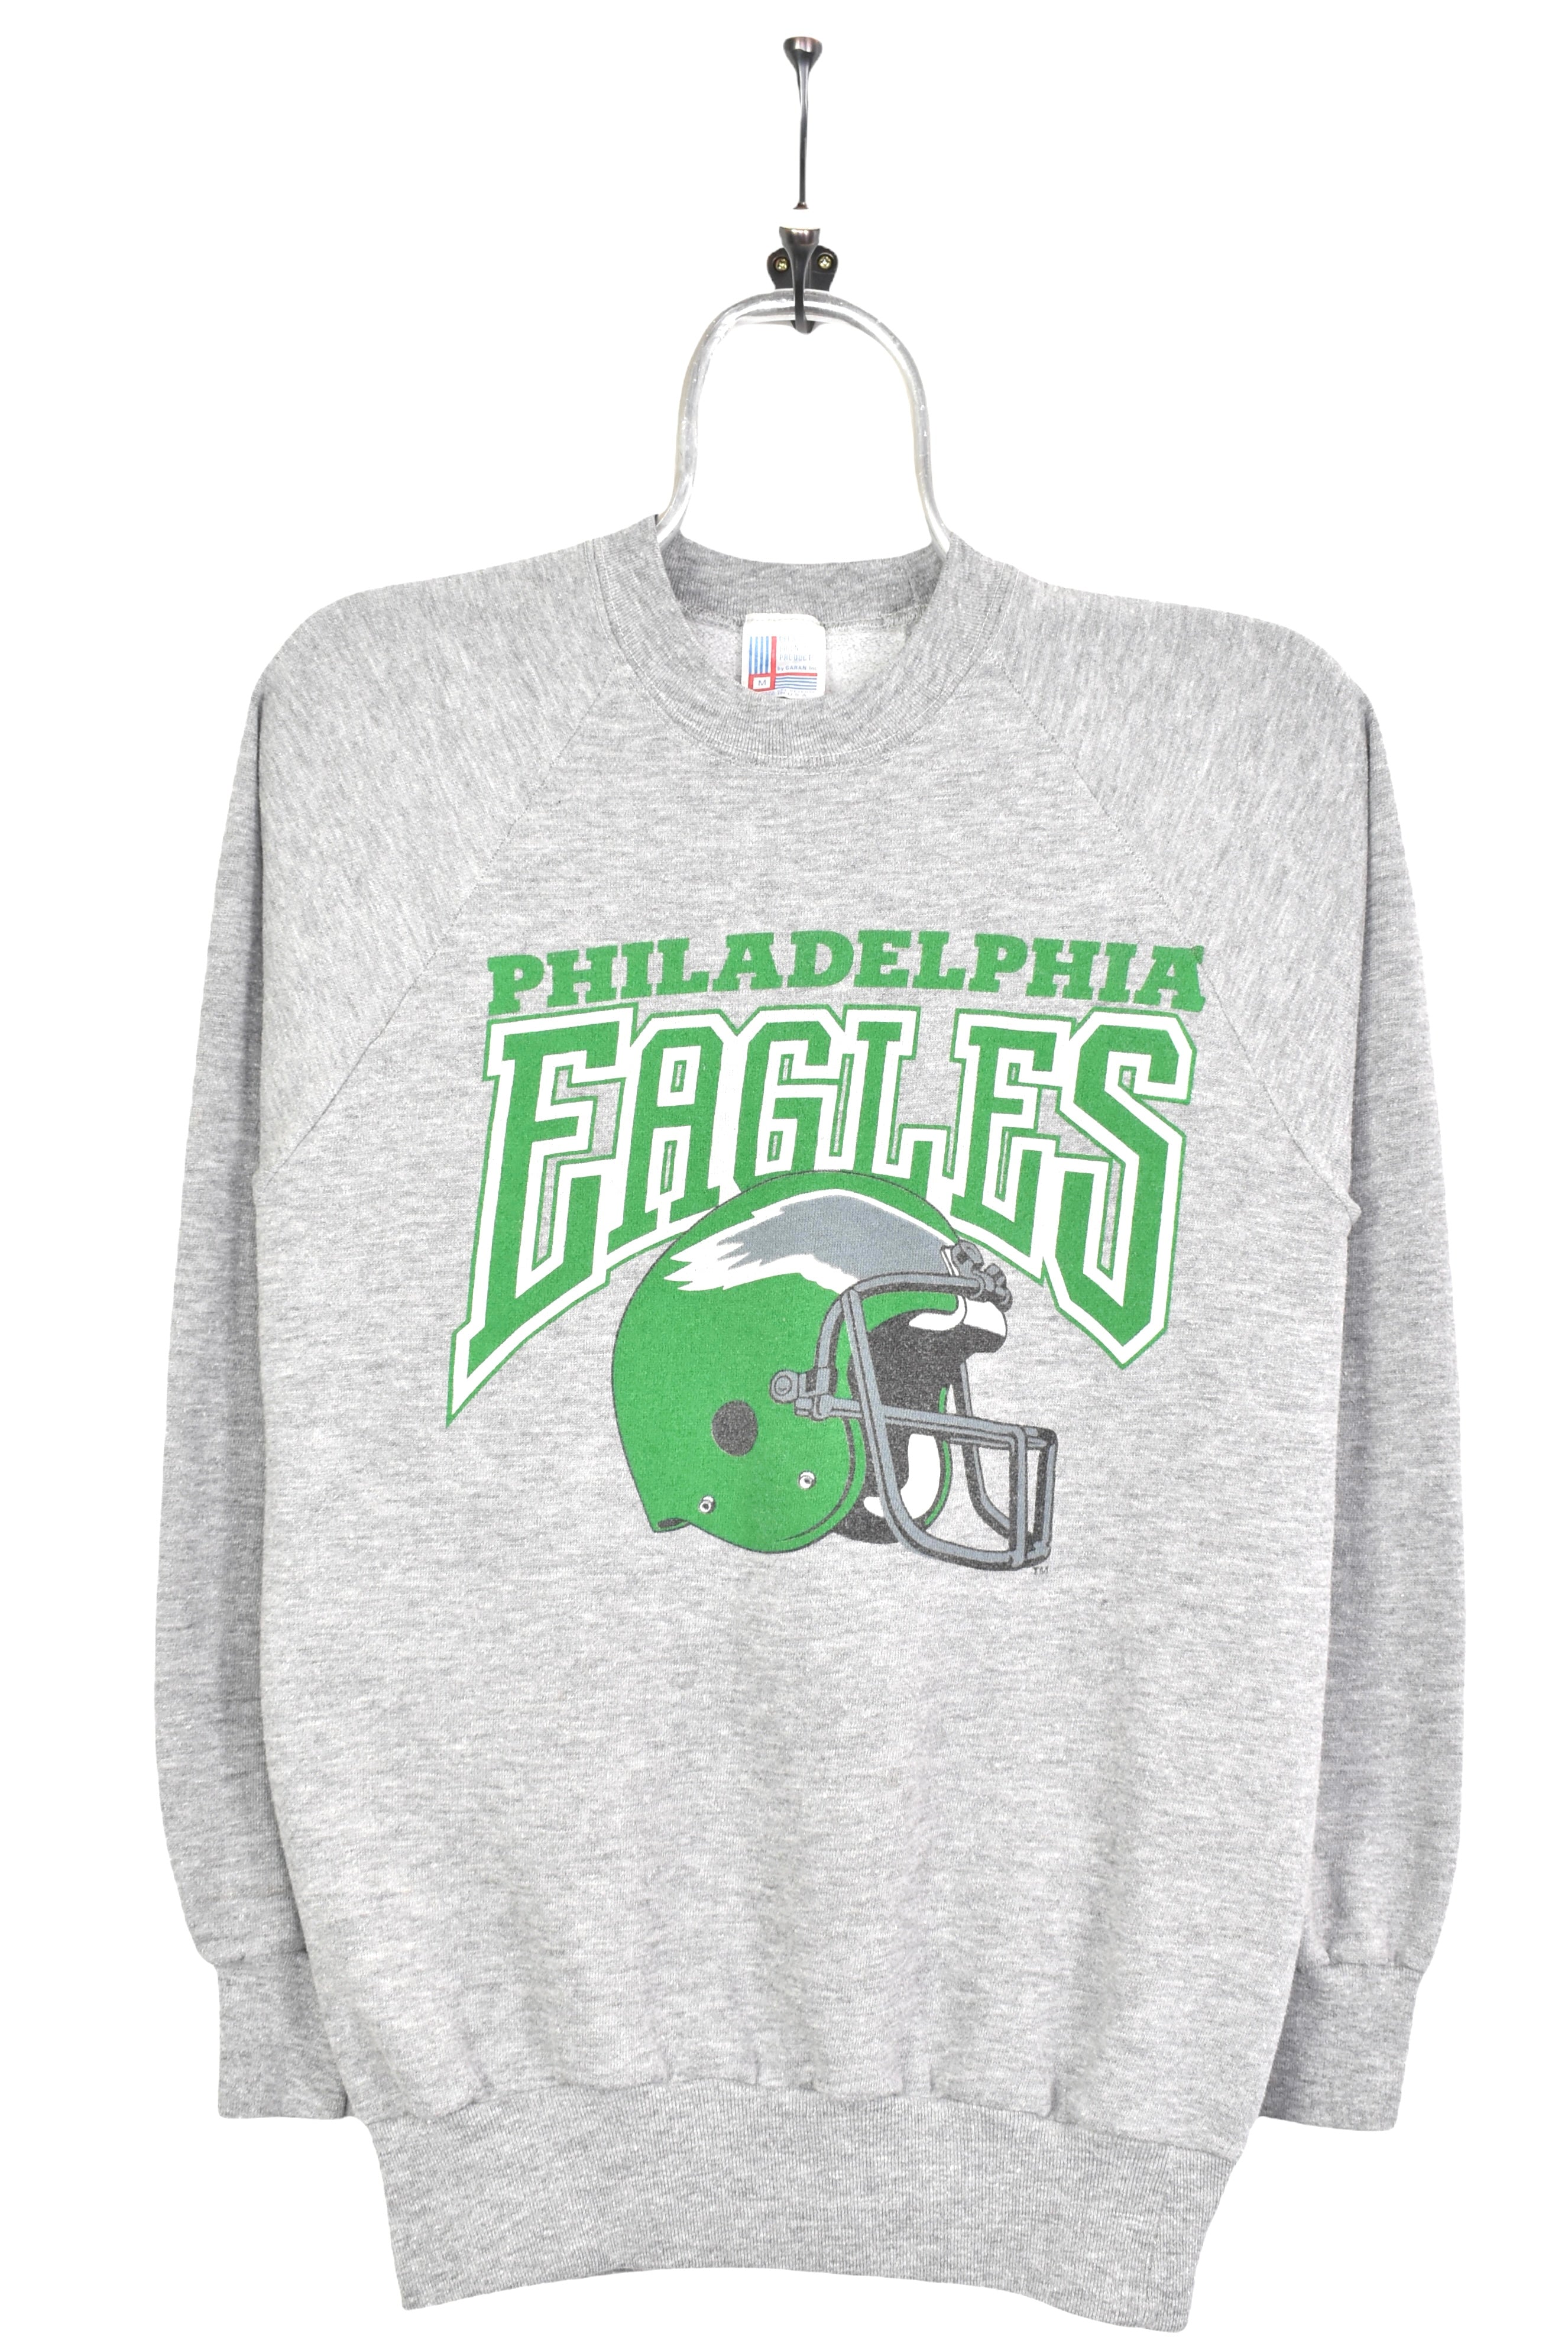 Philadelphia Eagles Sweatshirt Vintage 